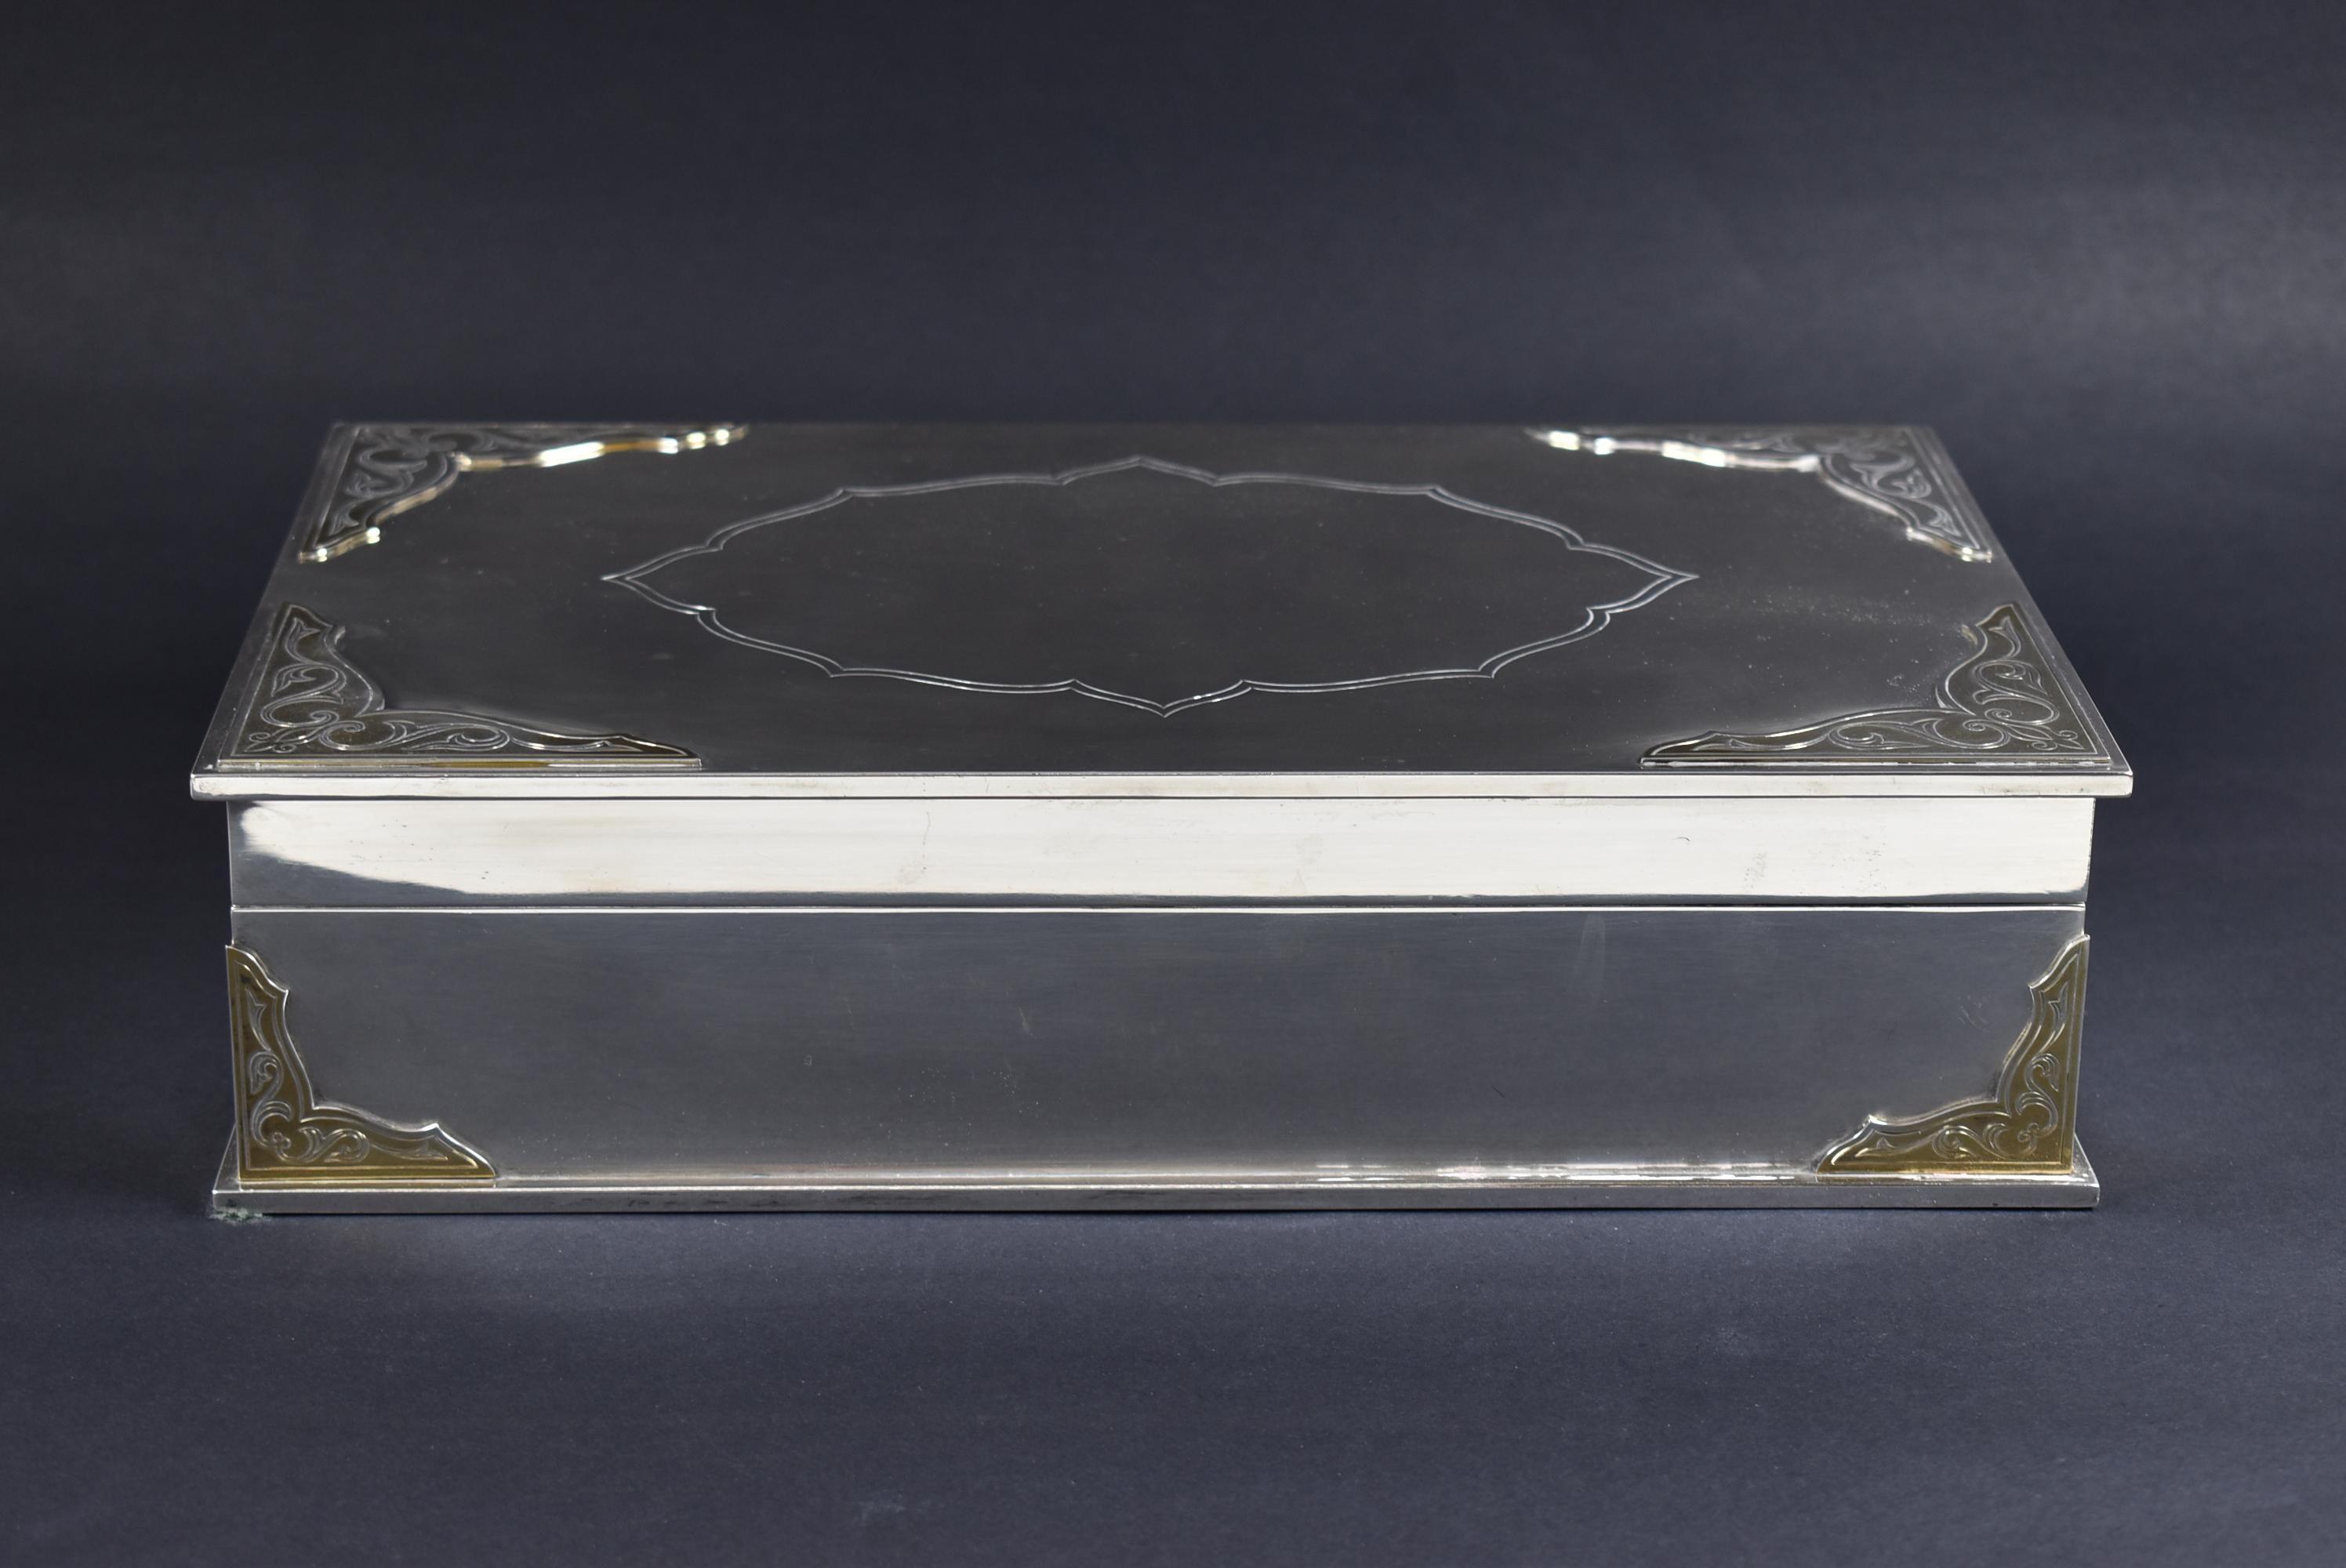 Vieille boîte à bijoux en argent sterling de Garrard & Co. 112 Regency street, doublée de velours. Elle pèse 84 oz. Dimensions : 7.5